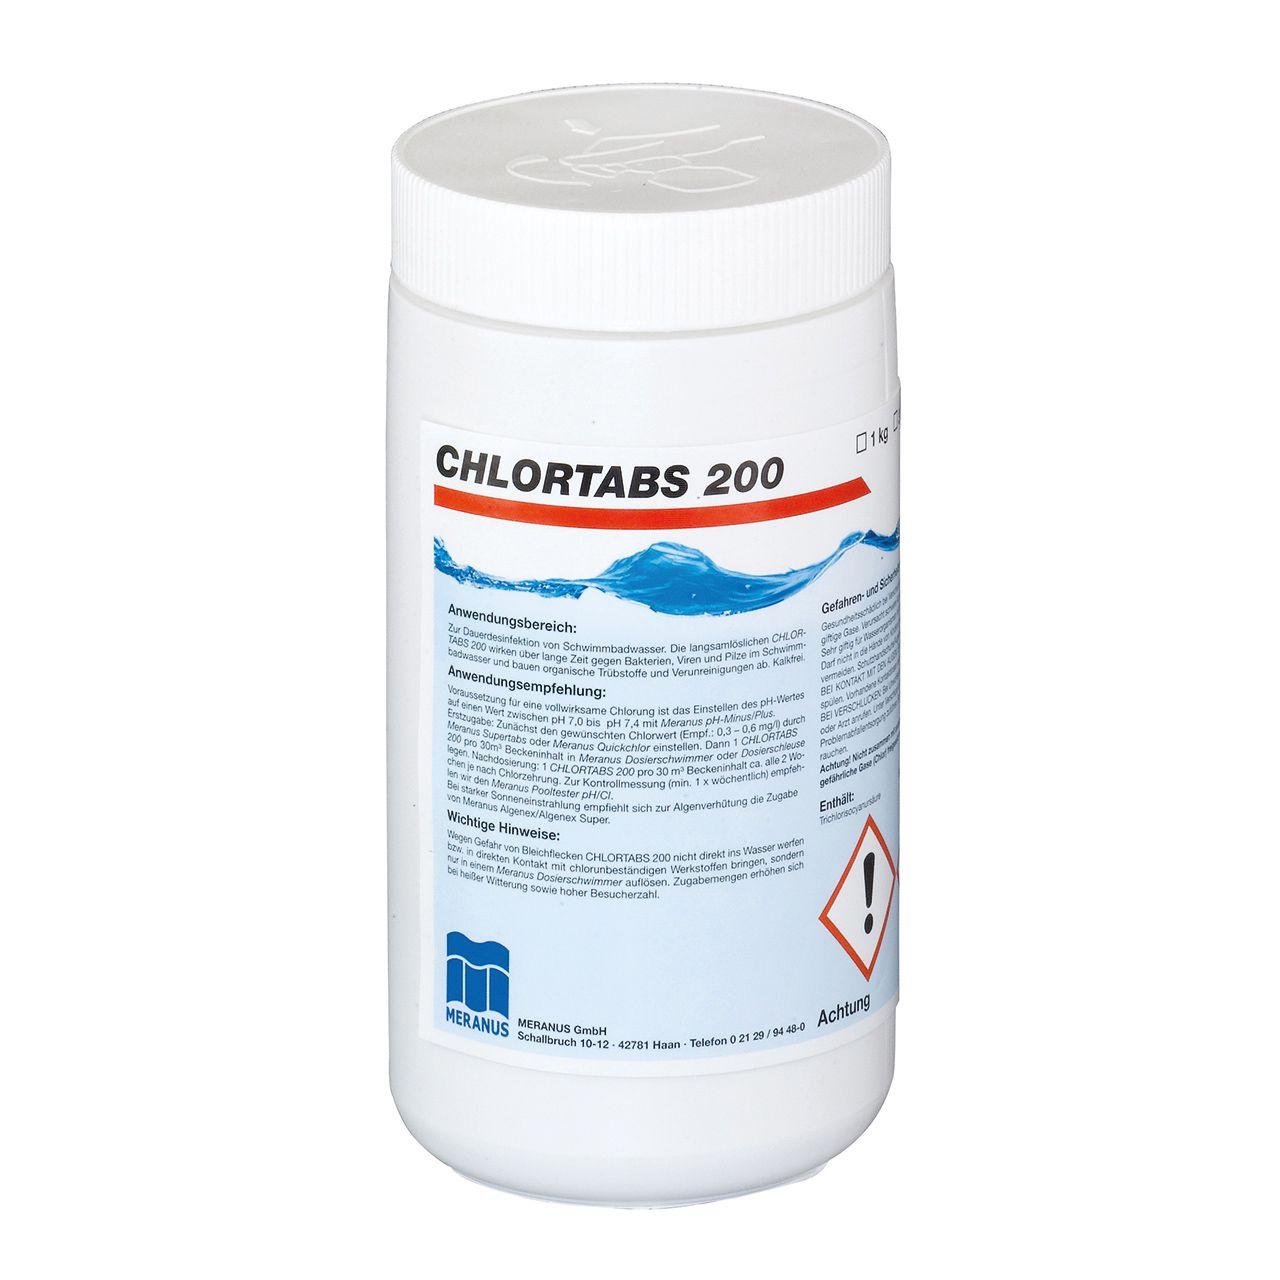 Meranus ChlorTabs 200 1 kg / 3 kg